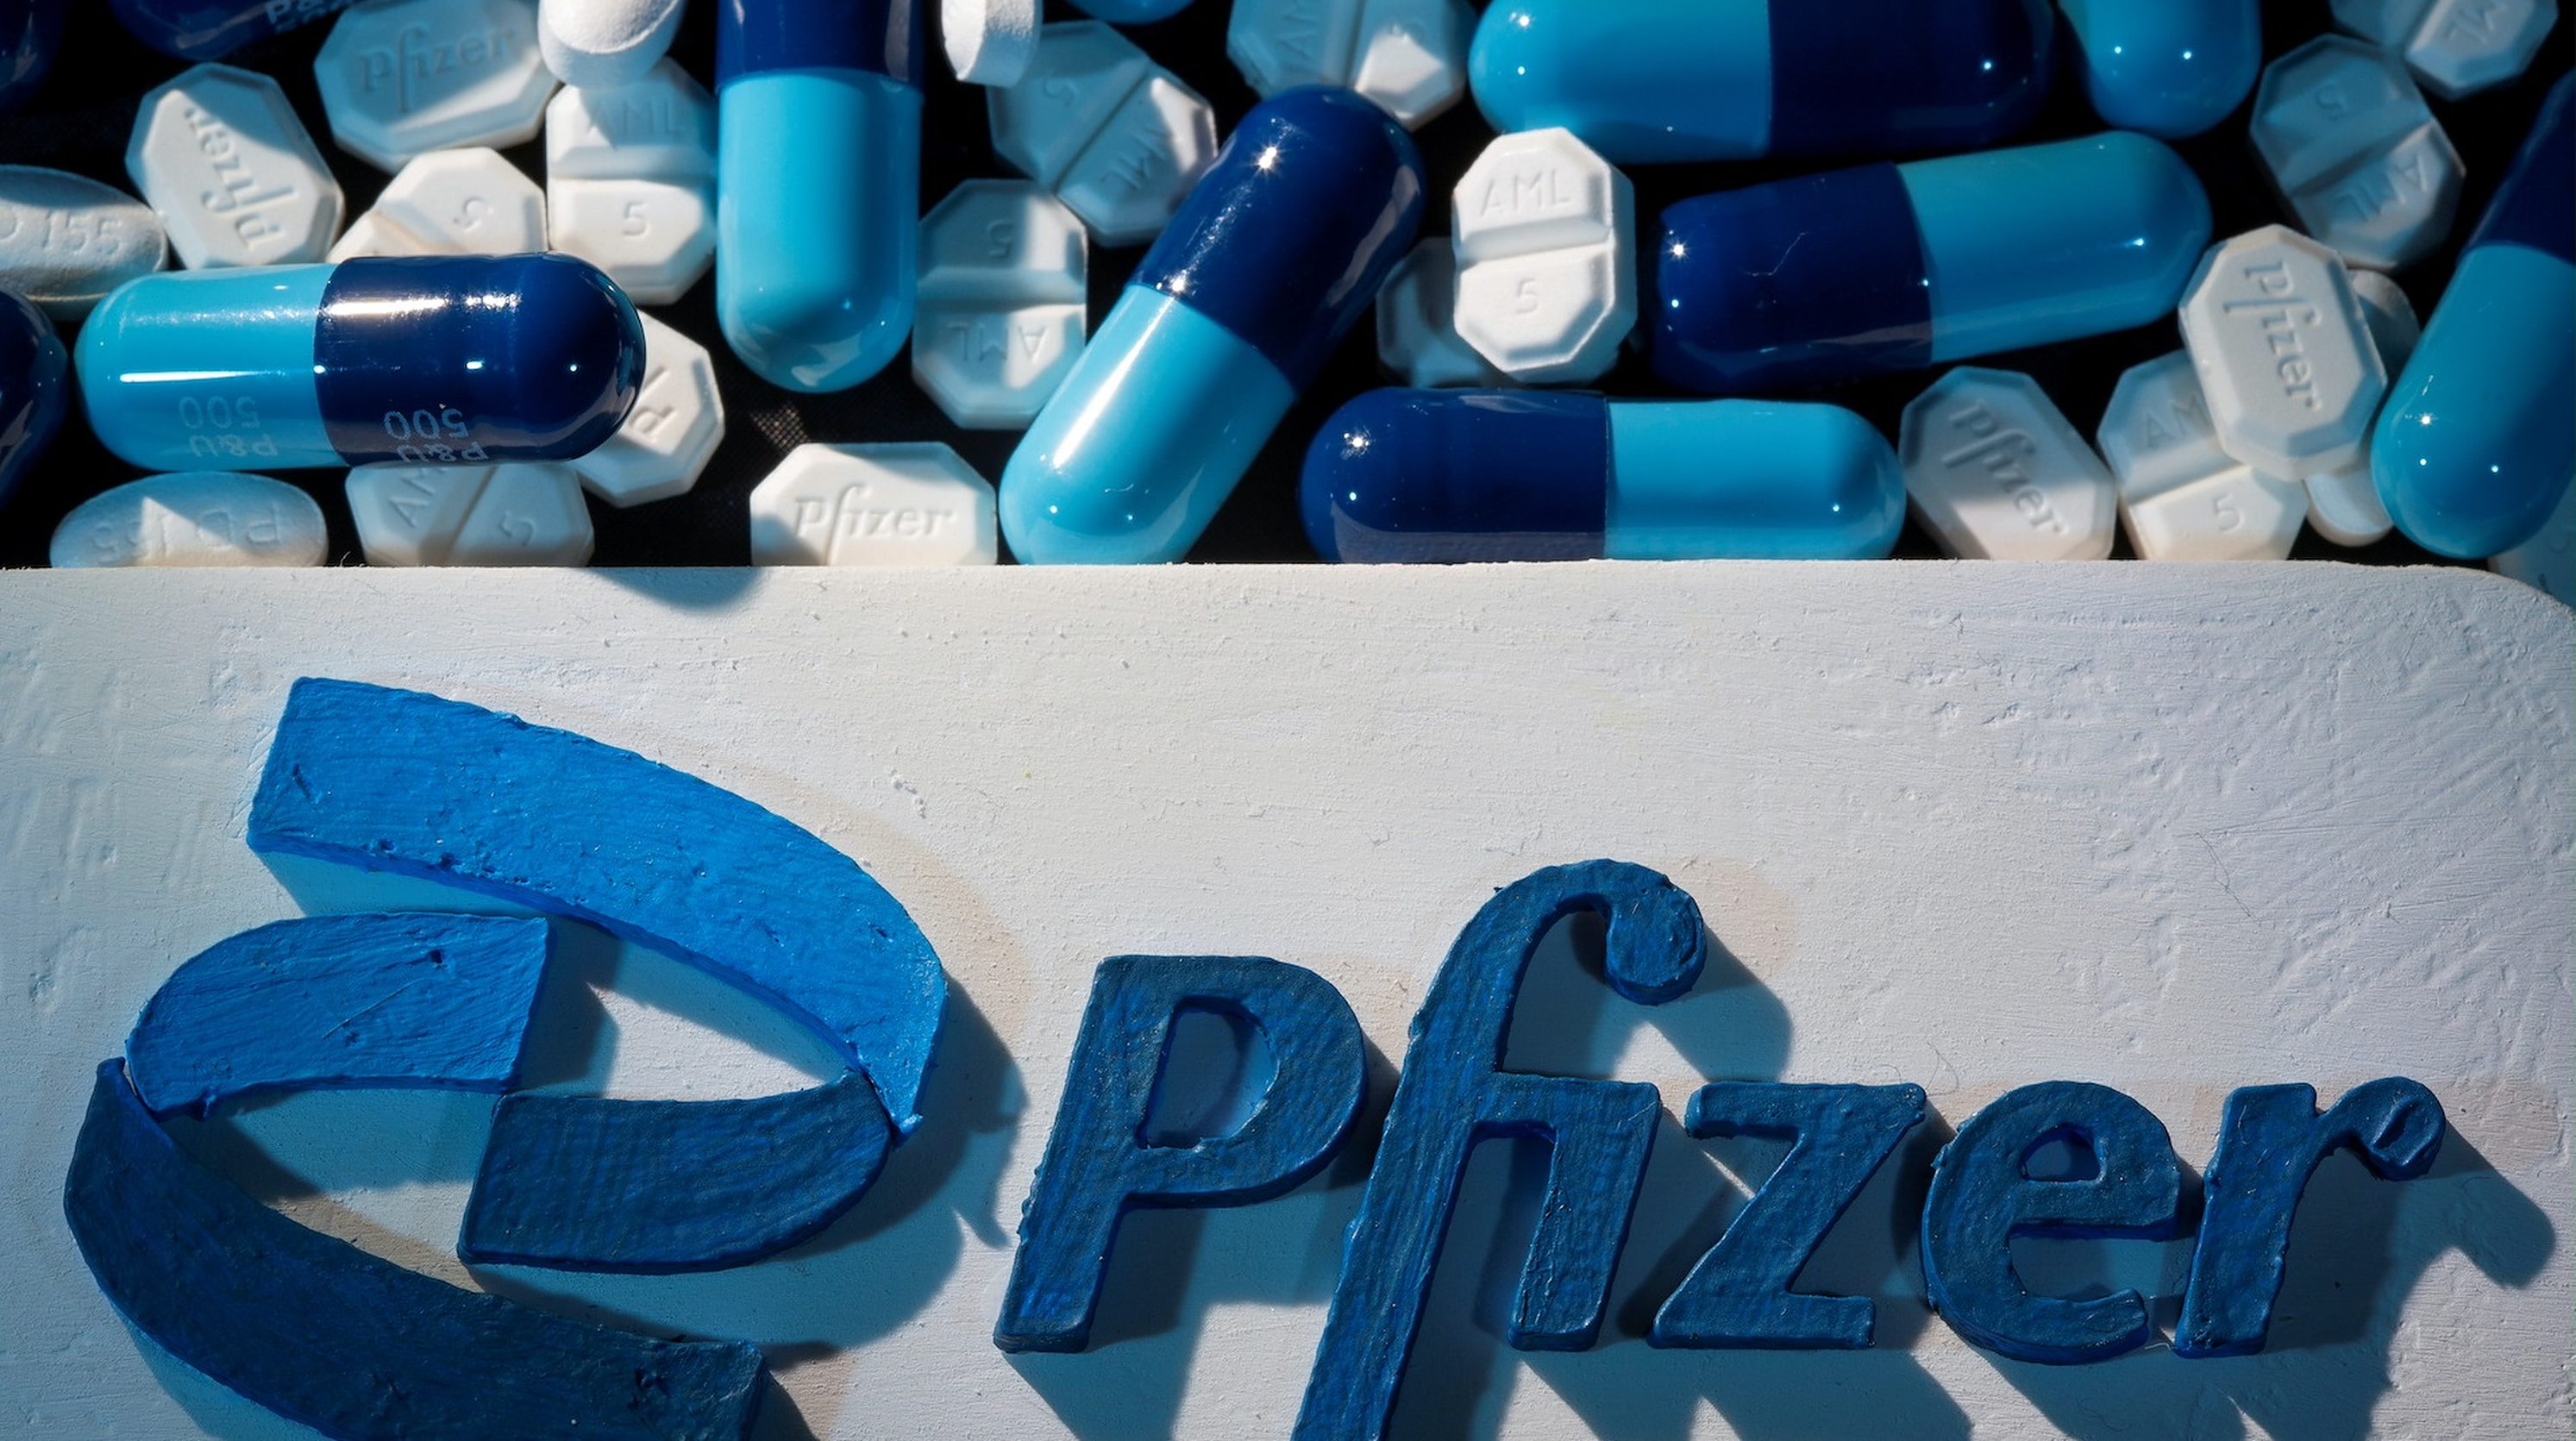 Noua pilulă anti-Covid de la Pfizer reduce riscul de spitalizare și deces cu 89%, arată rezultatele preliminare